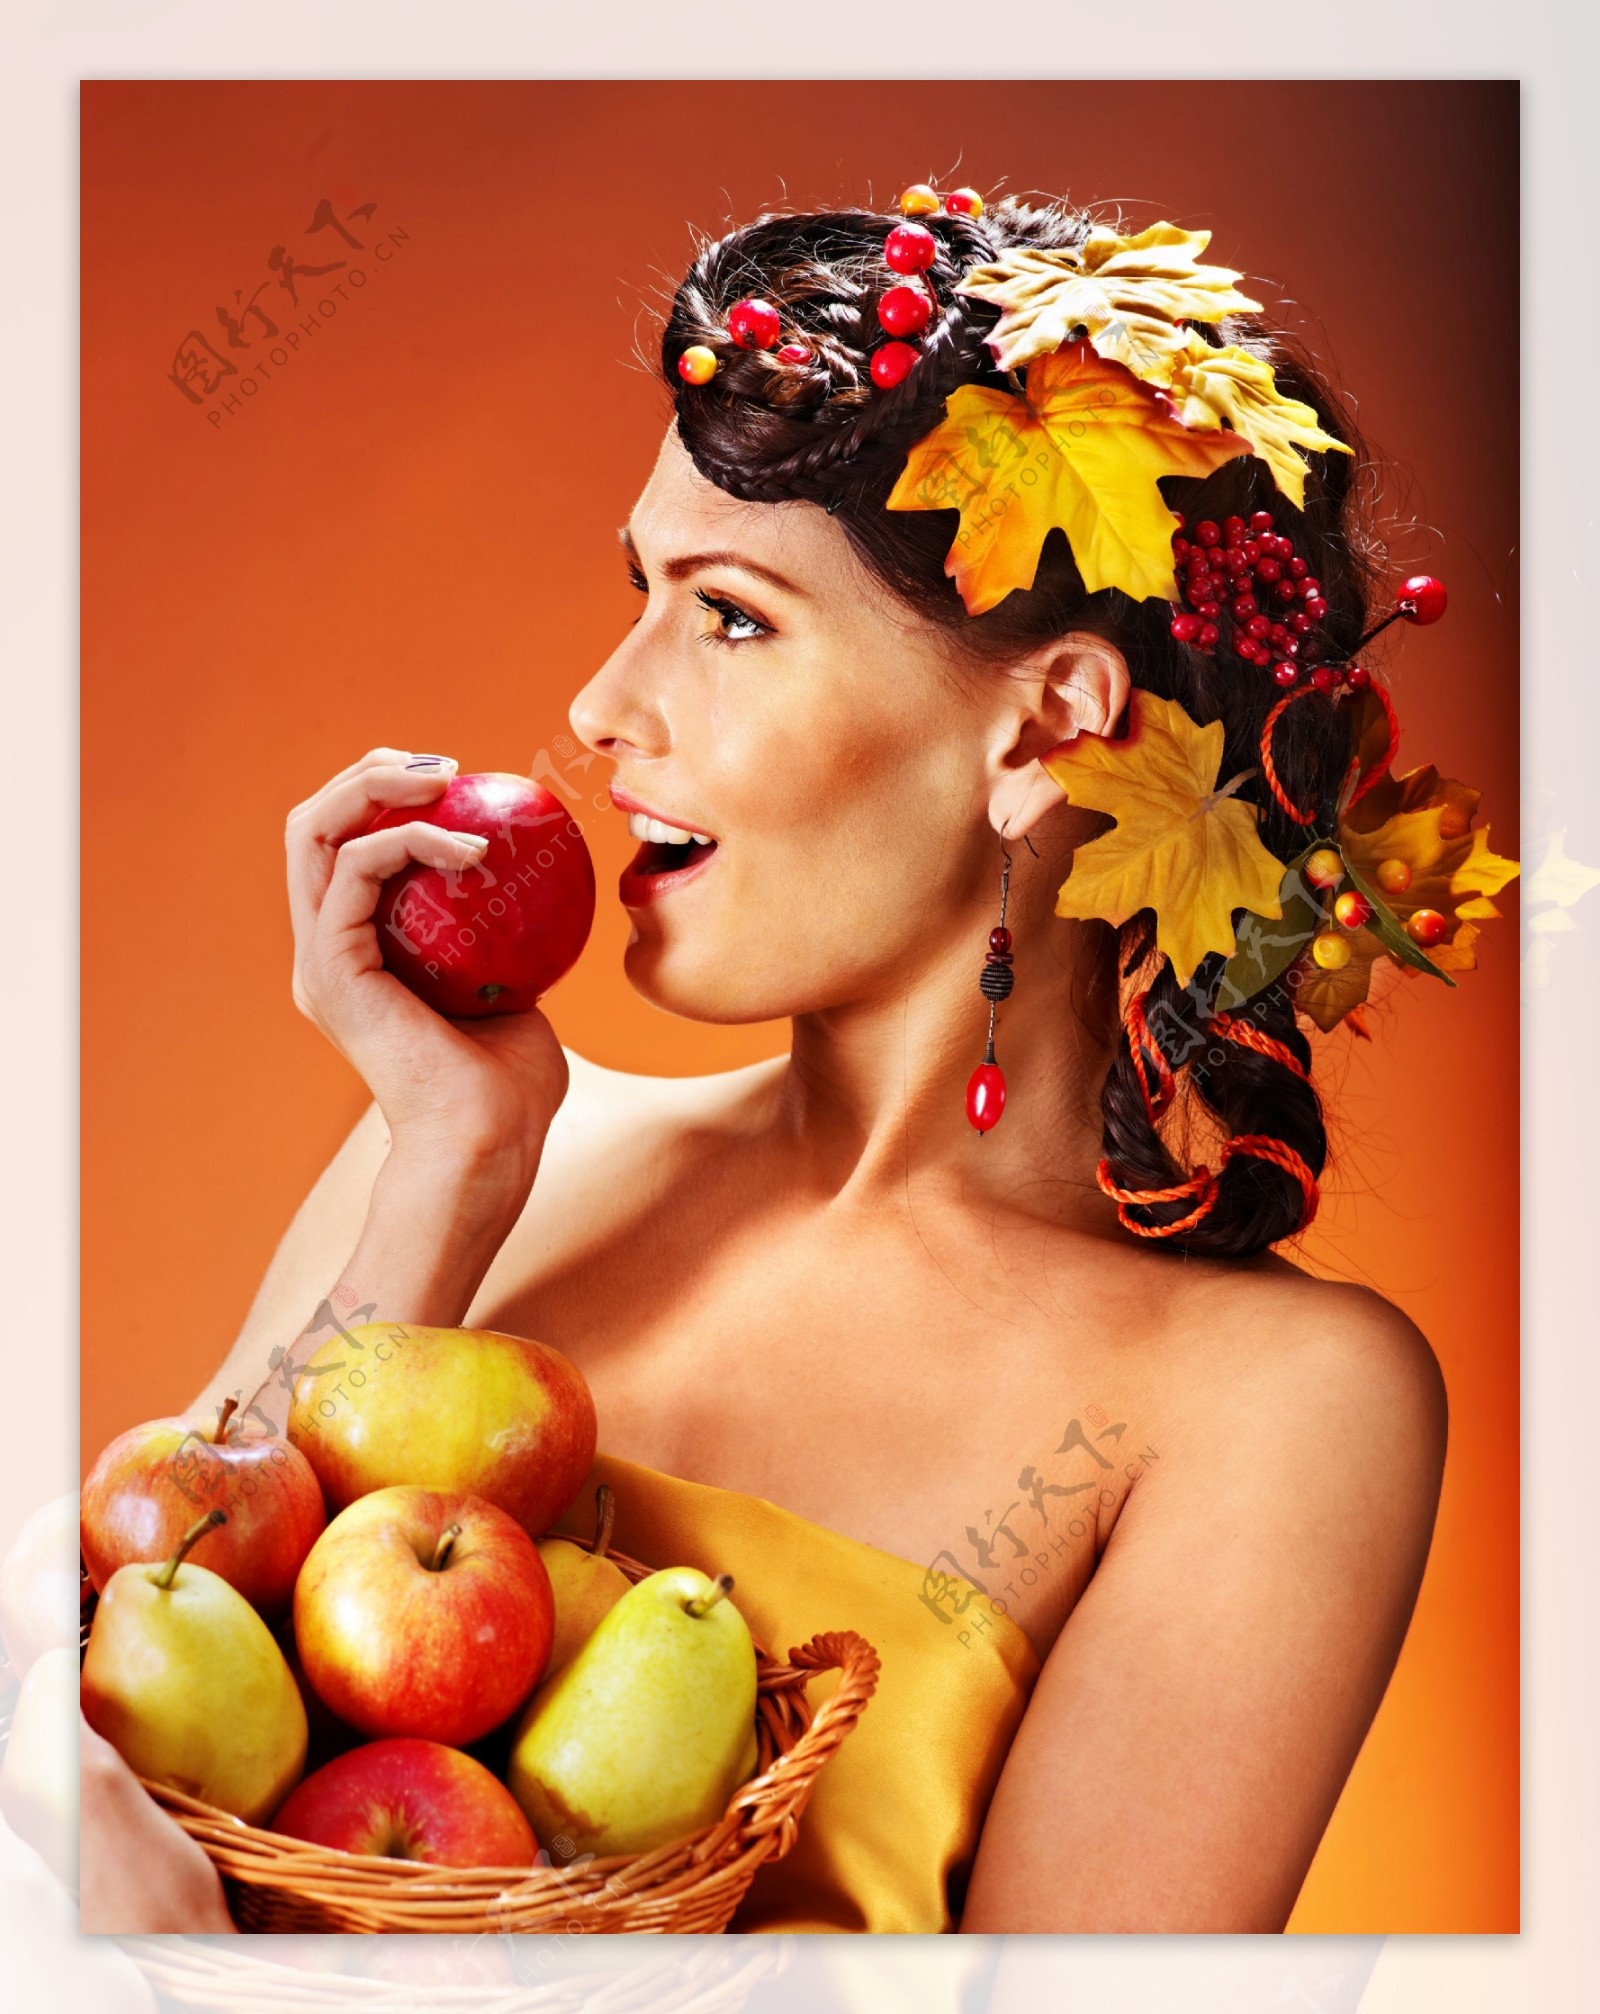 吃苹果的美女模特图片